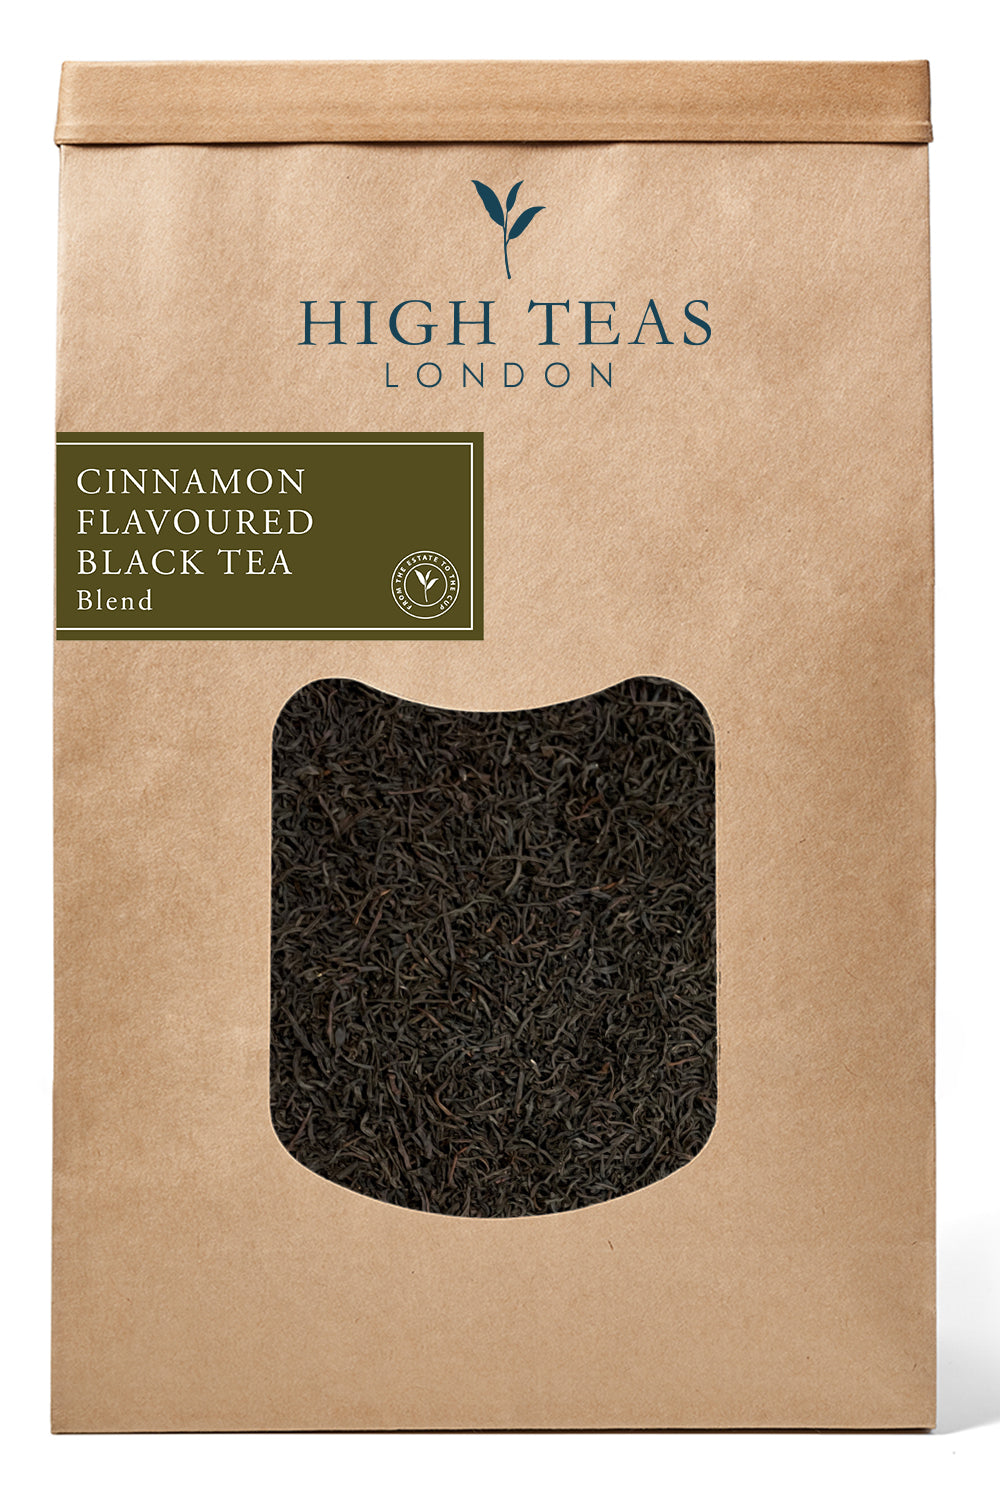 Cinnamon Flavoured Black Tea-500g-Loose Leaf Tea-High Teas